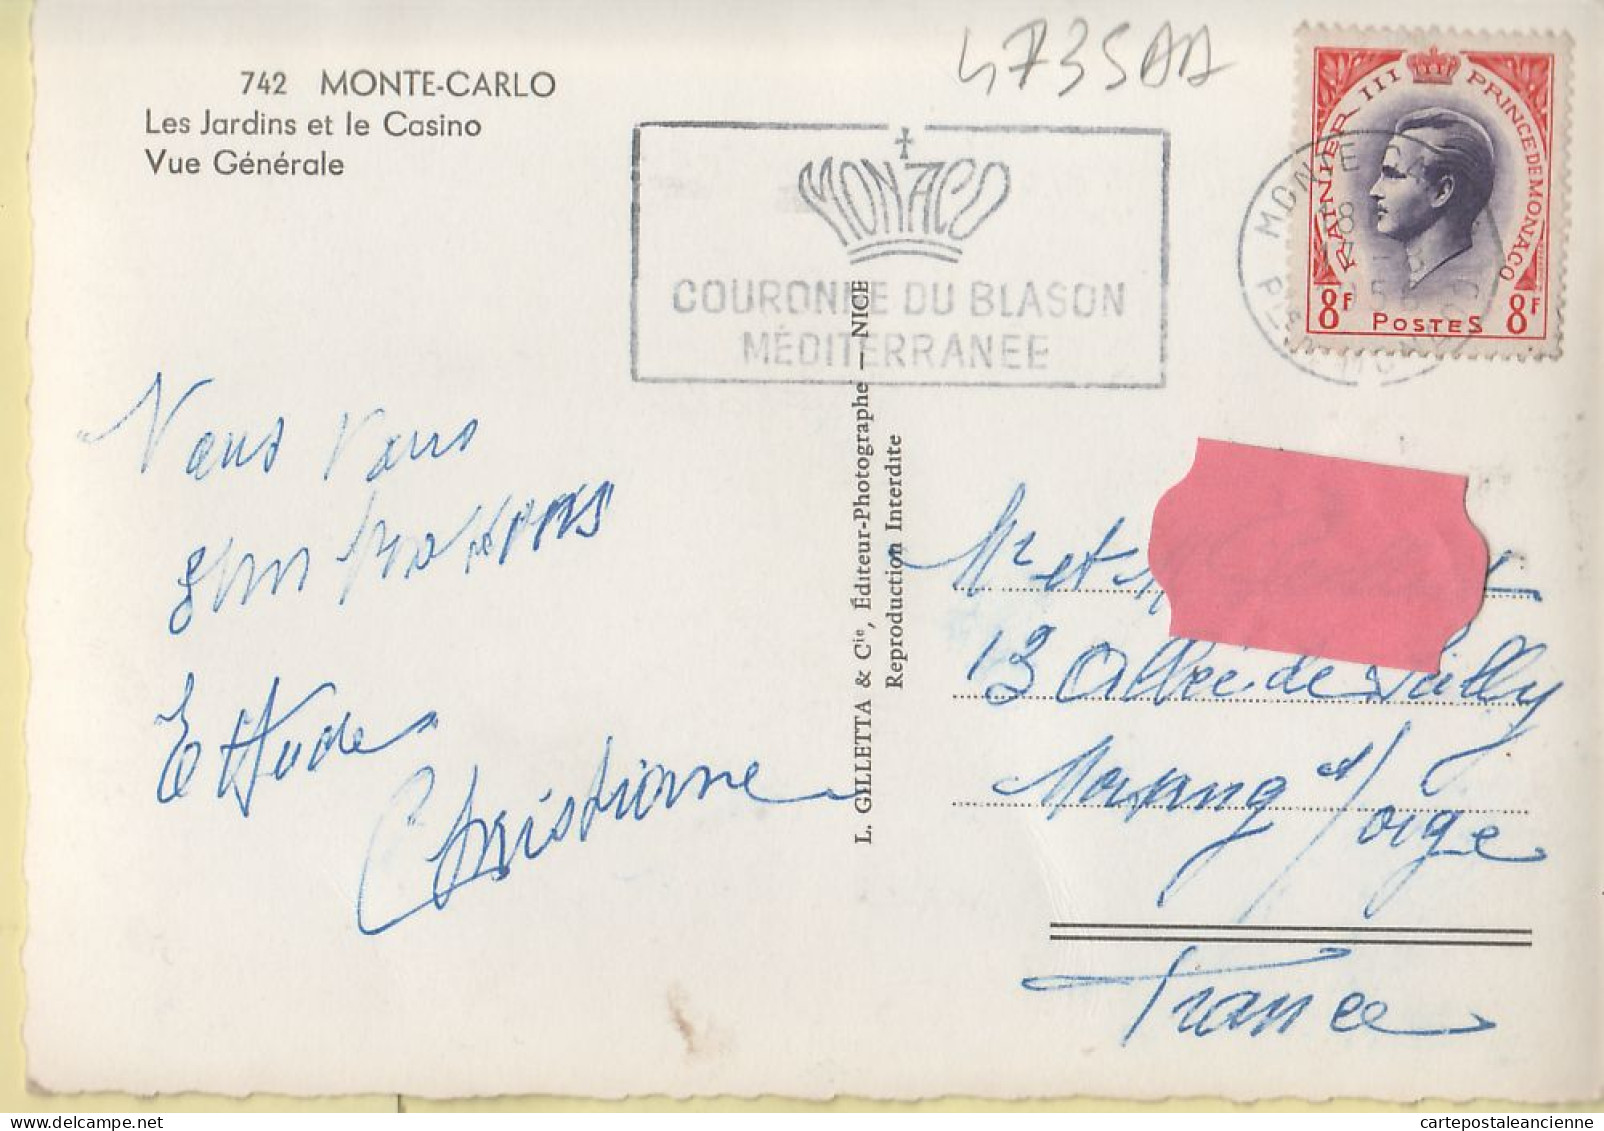 00833 ● Monaco MONTE-CARLO Les Jardins Casino Vue Générale Flamme COURONNE BLASON MEDITERRANEE 17.08.1956 -GILETTA 742 - Panoramische Zichten, Meerdere Zichten